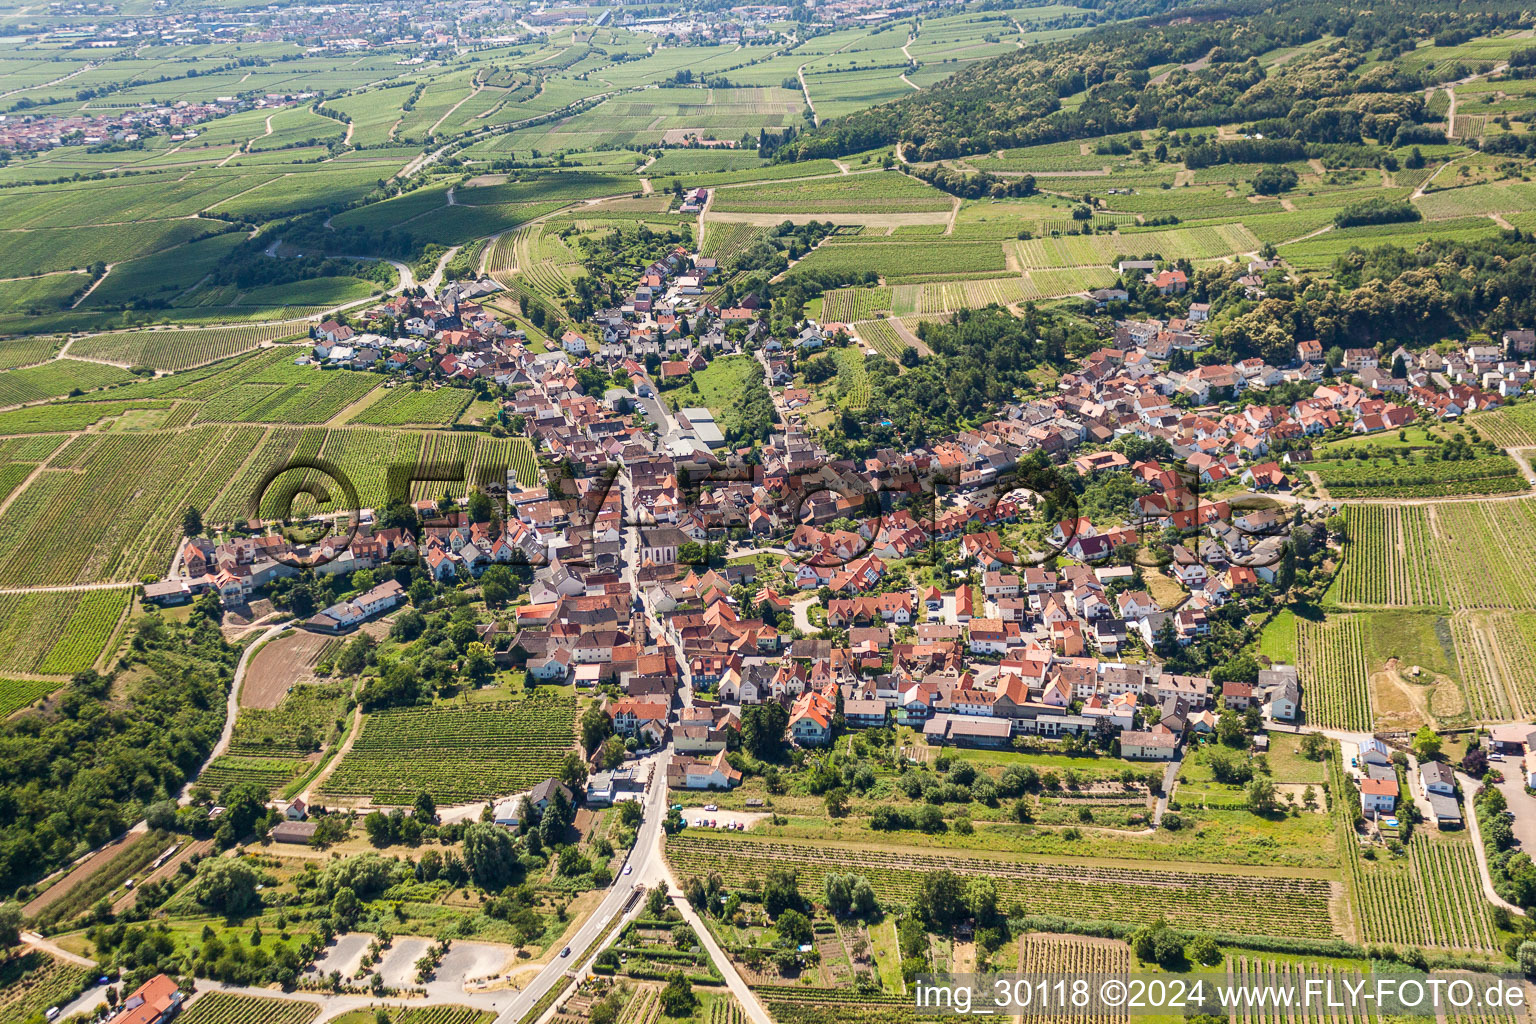 Luftbild von Dorf - Ansicht am Rande von landwirtschaftlichen Feldern und Nutzflächen in Leistadt in Bad Dürkheim im Bundesland Rheinland-Pfalz, Deutschland